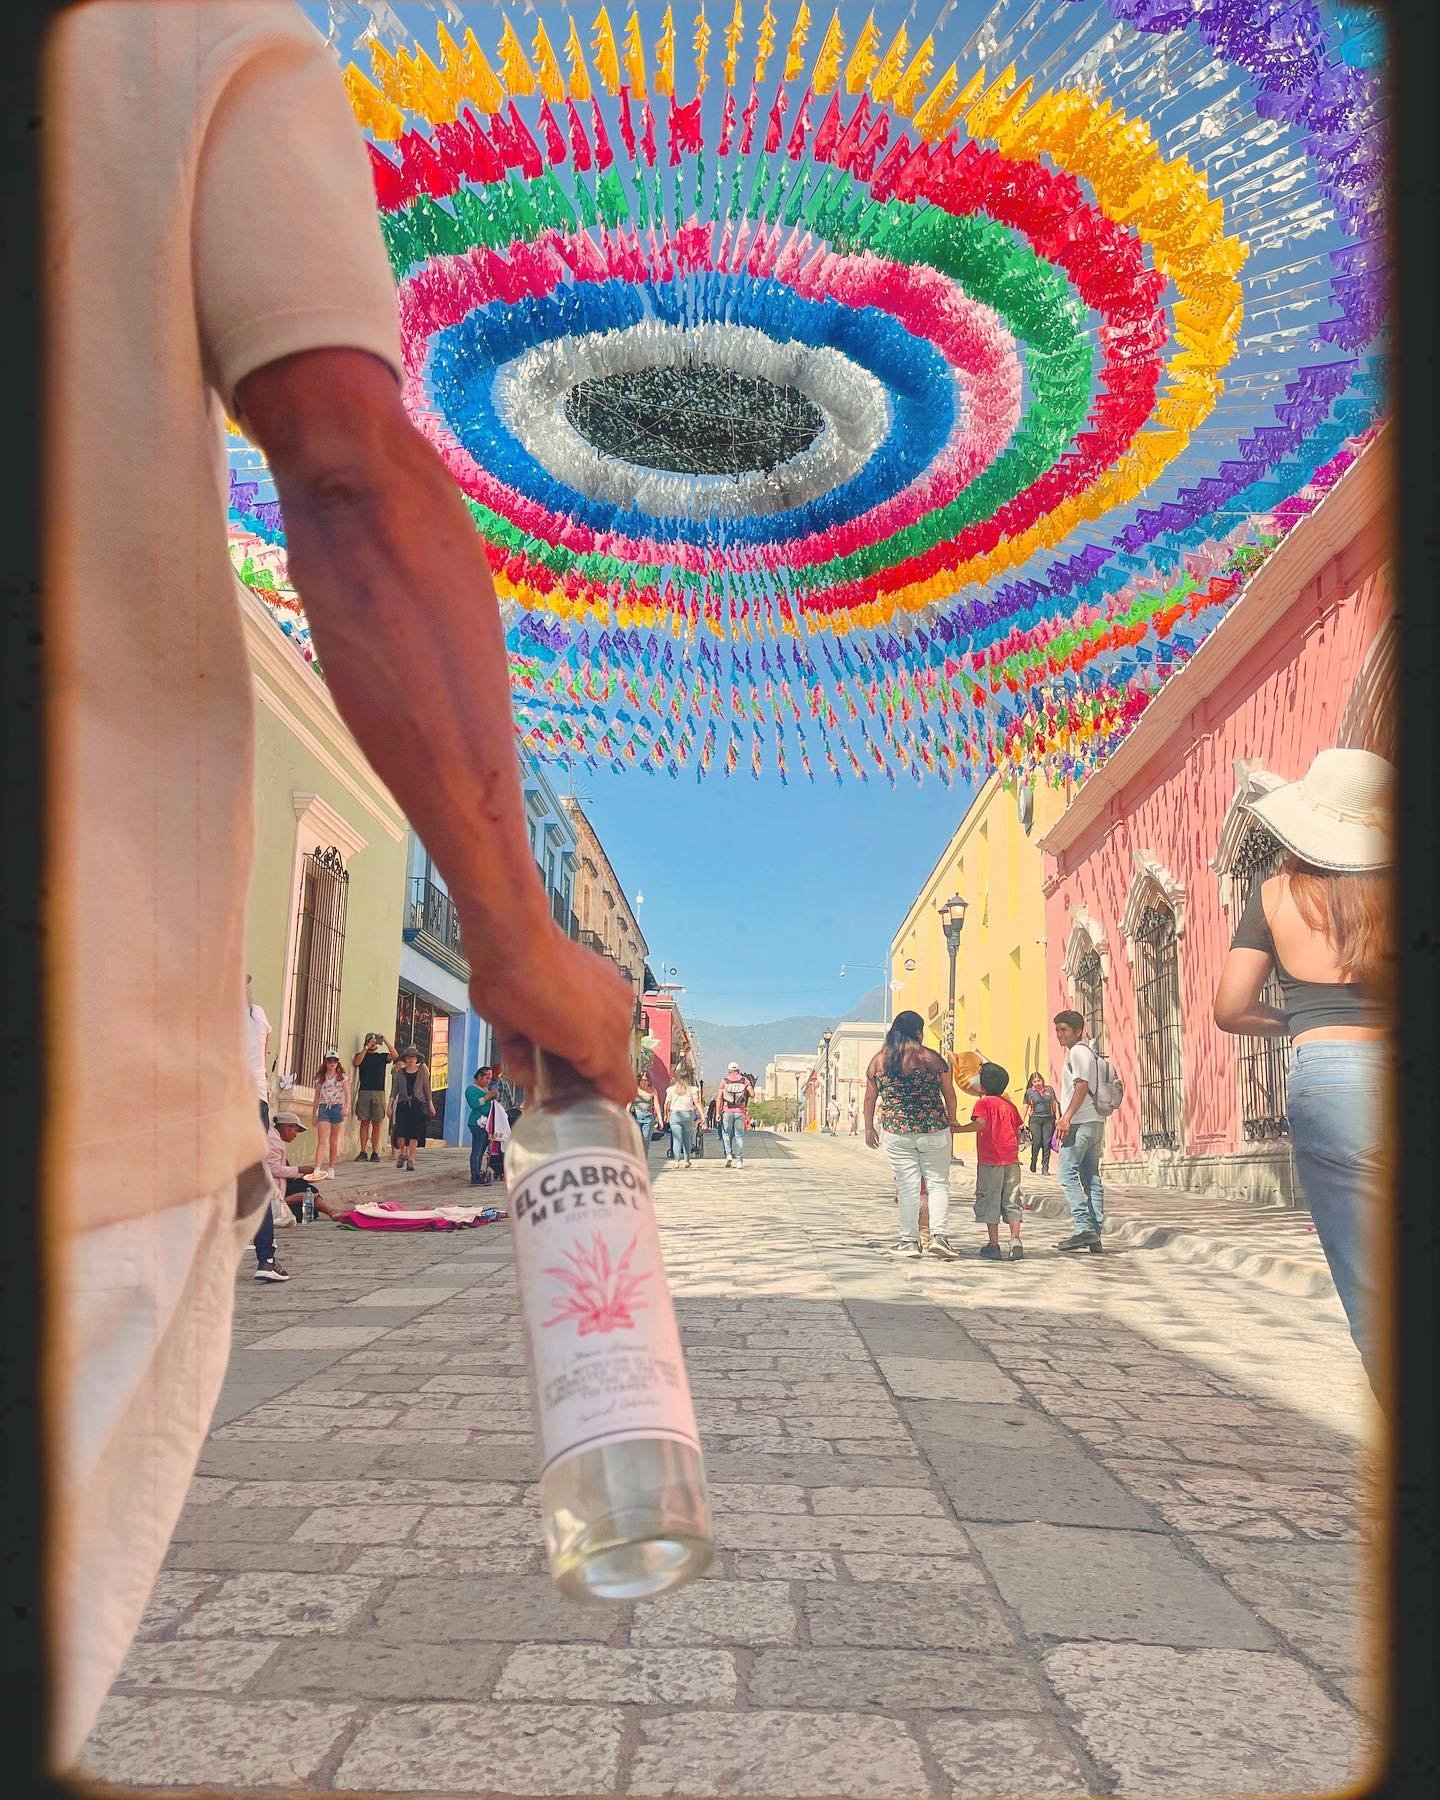 Los eternos sabores y colores de Oaxaca #ElCabron

#Mezcal #Agave #Tequila #Mexico #Colores #Sabores #Arte #Colors #Flavors #foodanddrink #Spirit #VivaMexicoCabrones #SaludCabron #Artisanal #Art #Nature #Crafted #Oaxaca